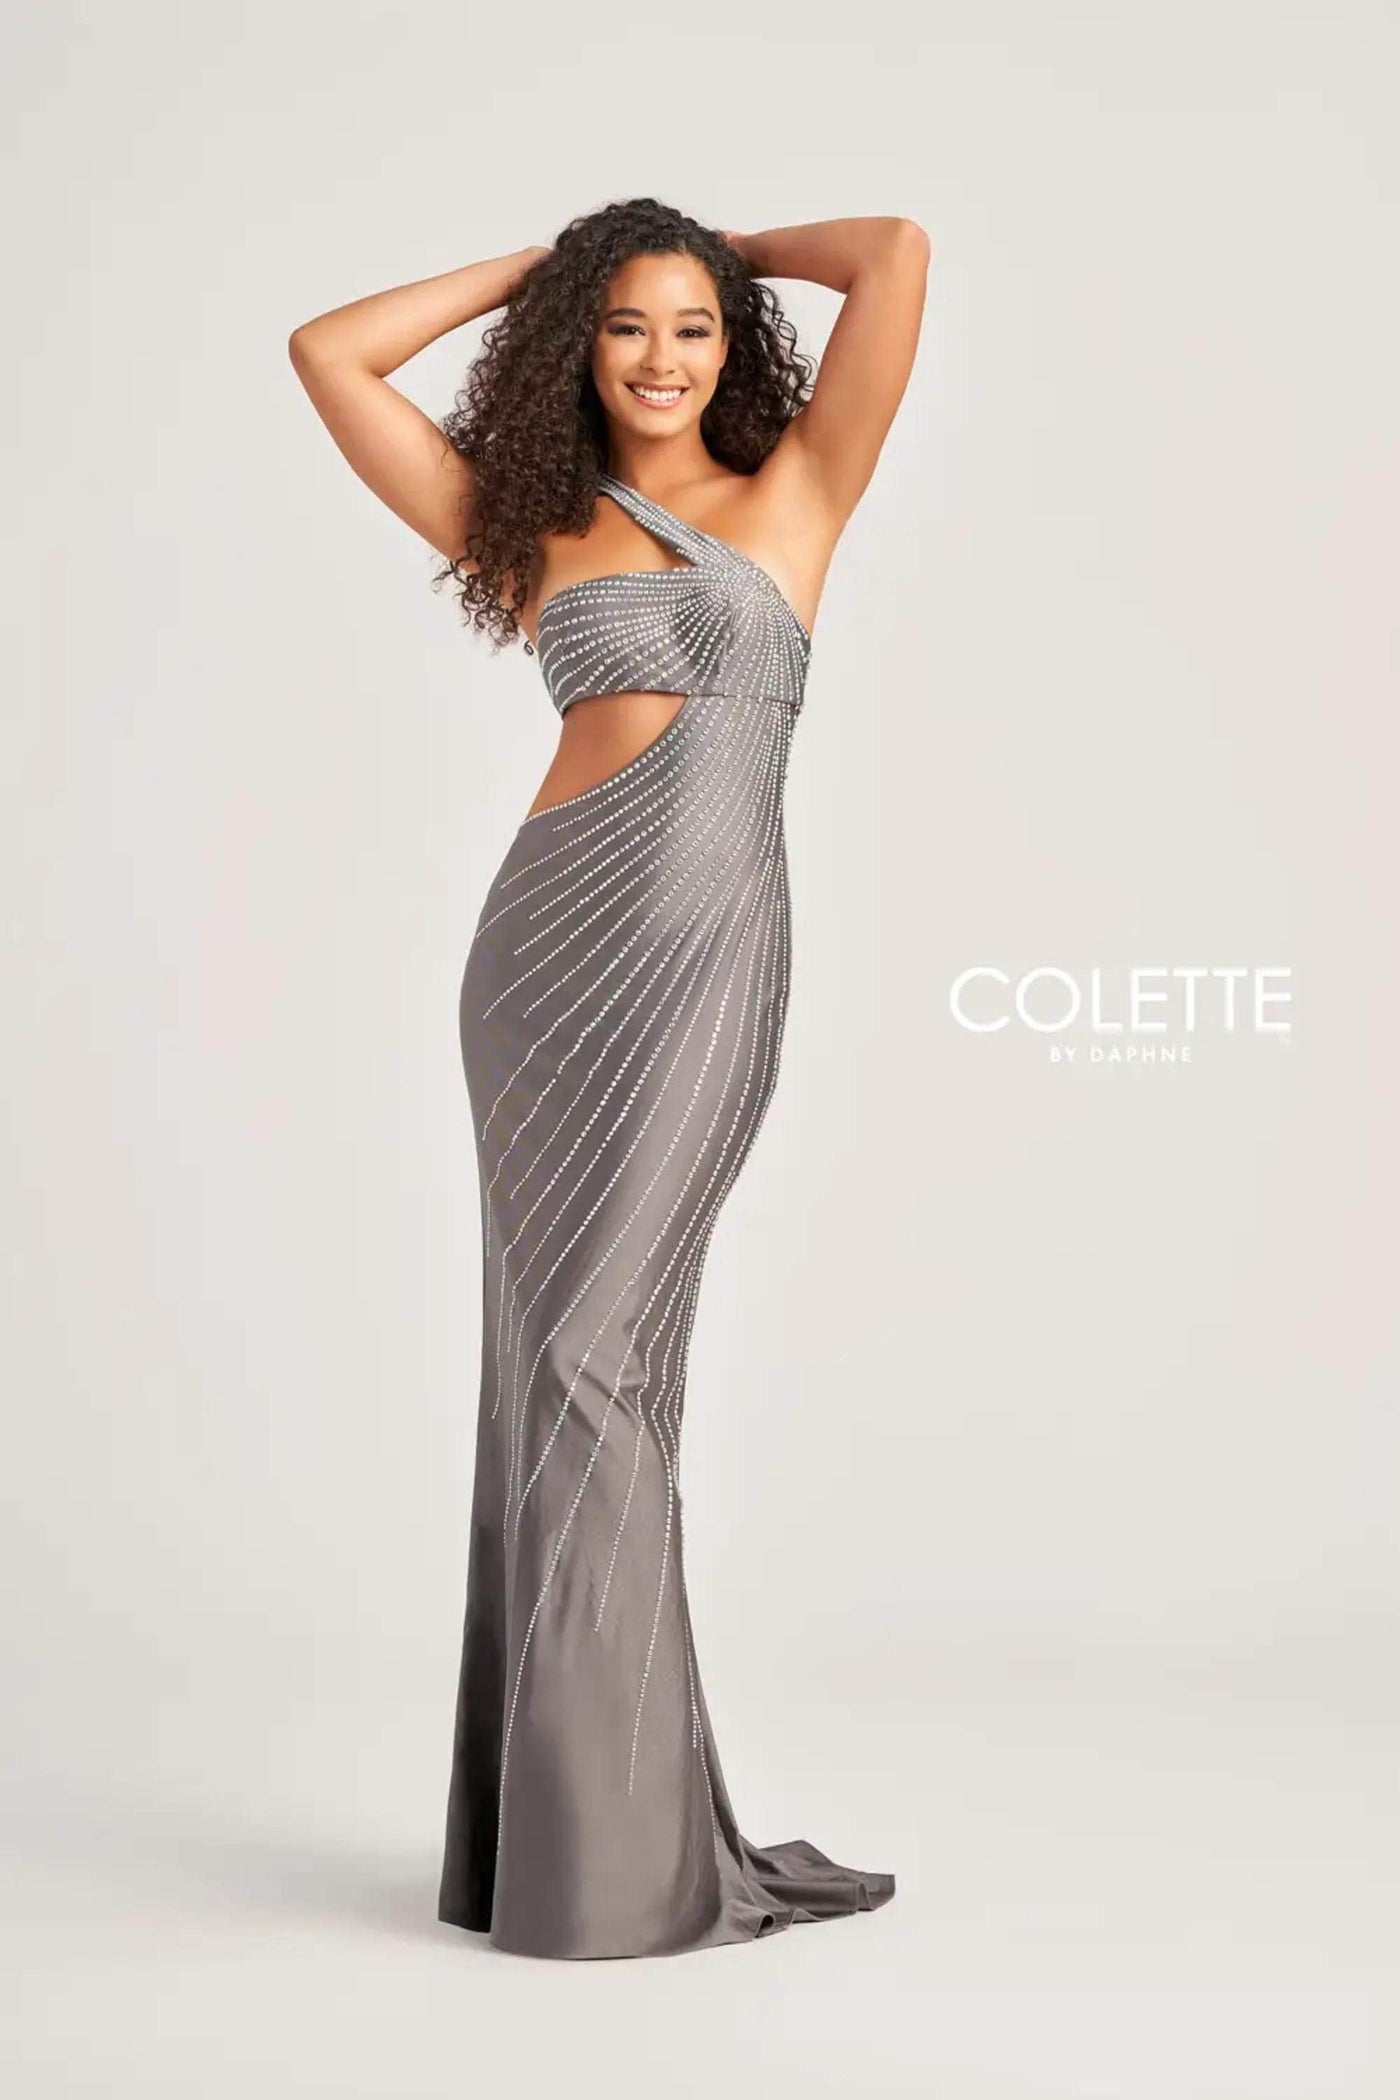 Colette By Daphne CL5139 - One Shoulder Cutout Prom Dress